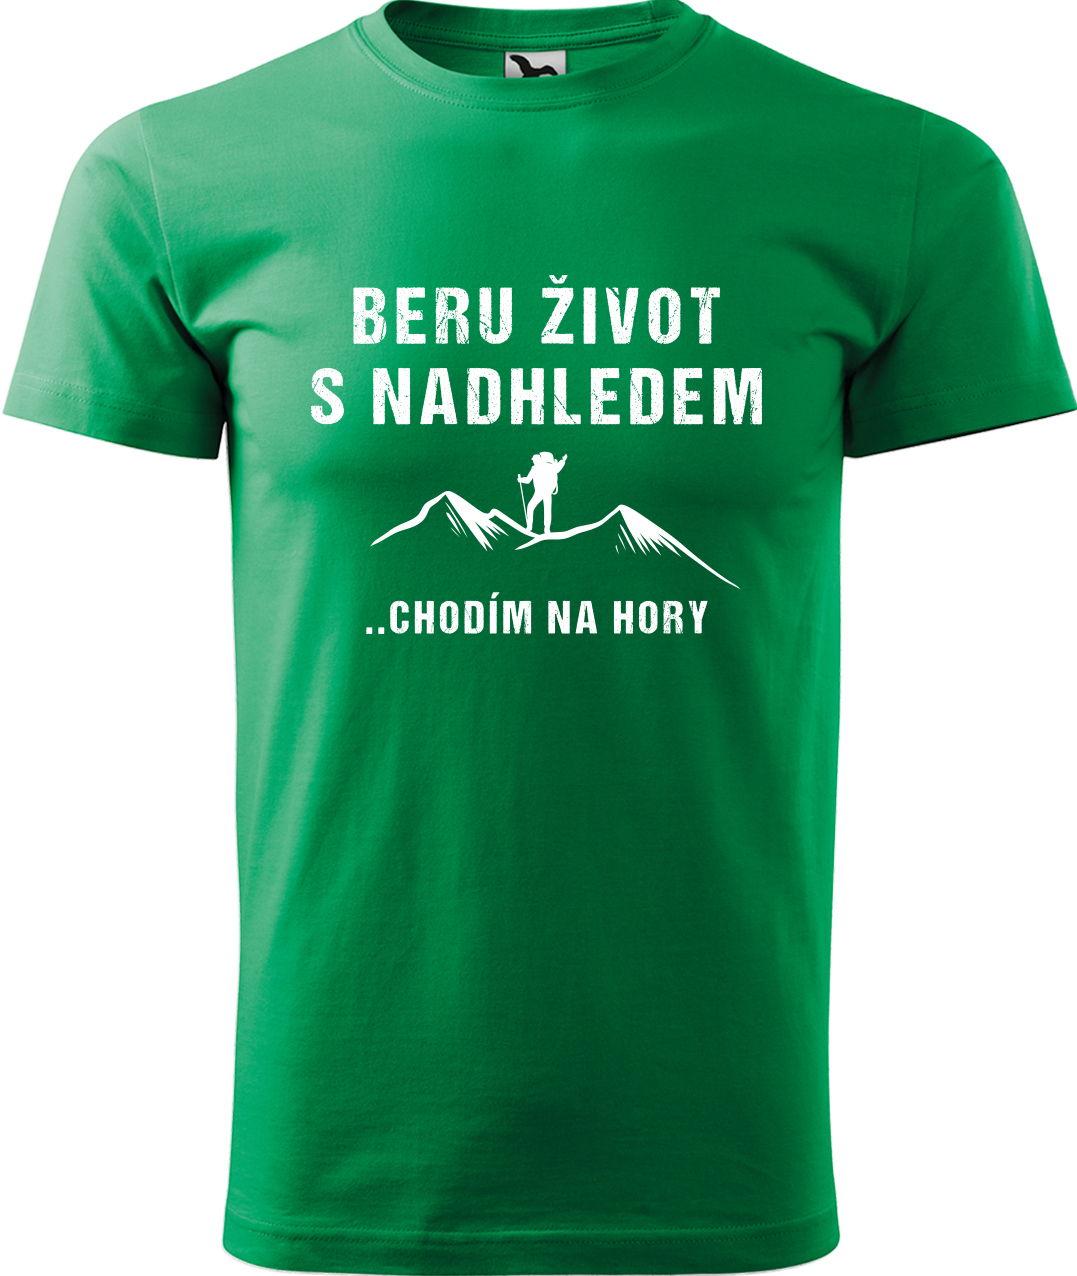 Pánské tričko na hory - Beru život s nadhledem, chodím na hory Velikost: XL, Barva: Středně zelená (16), Střih: pánský